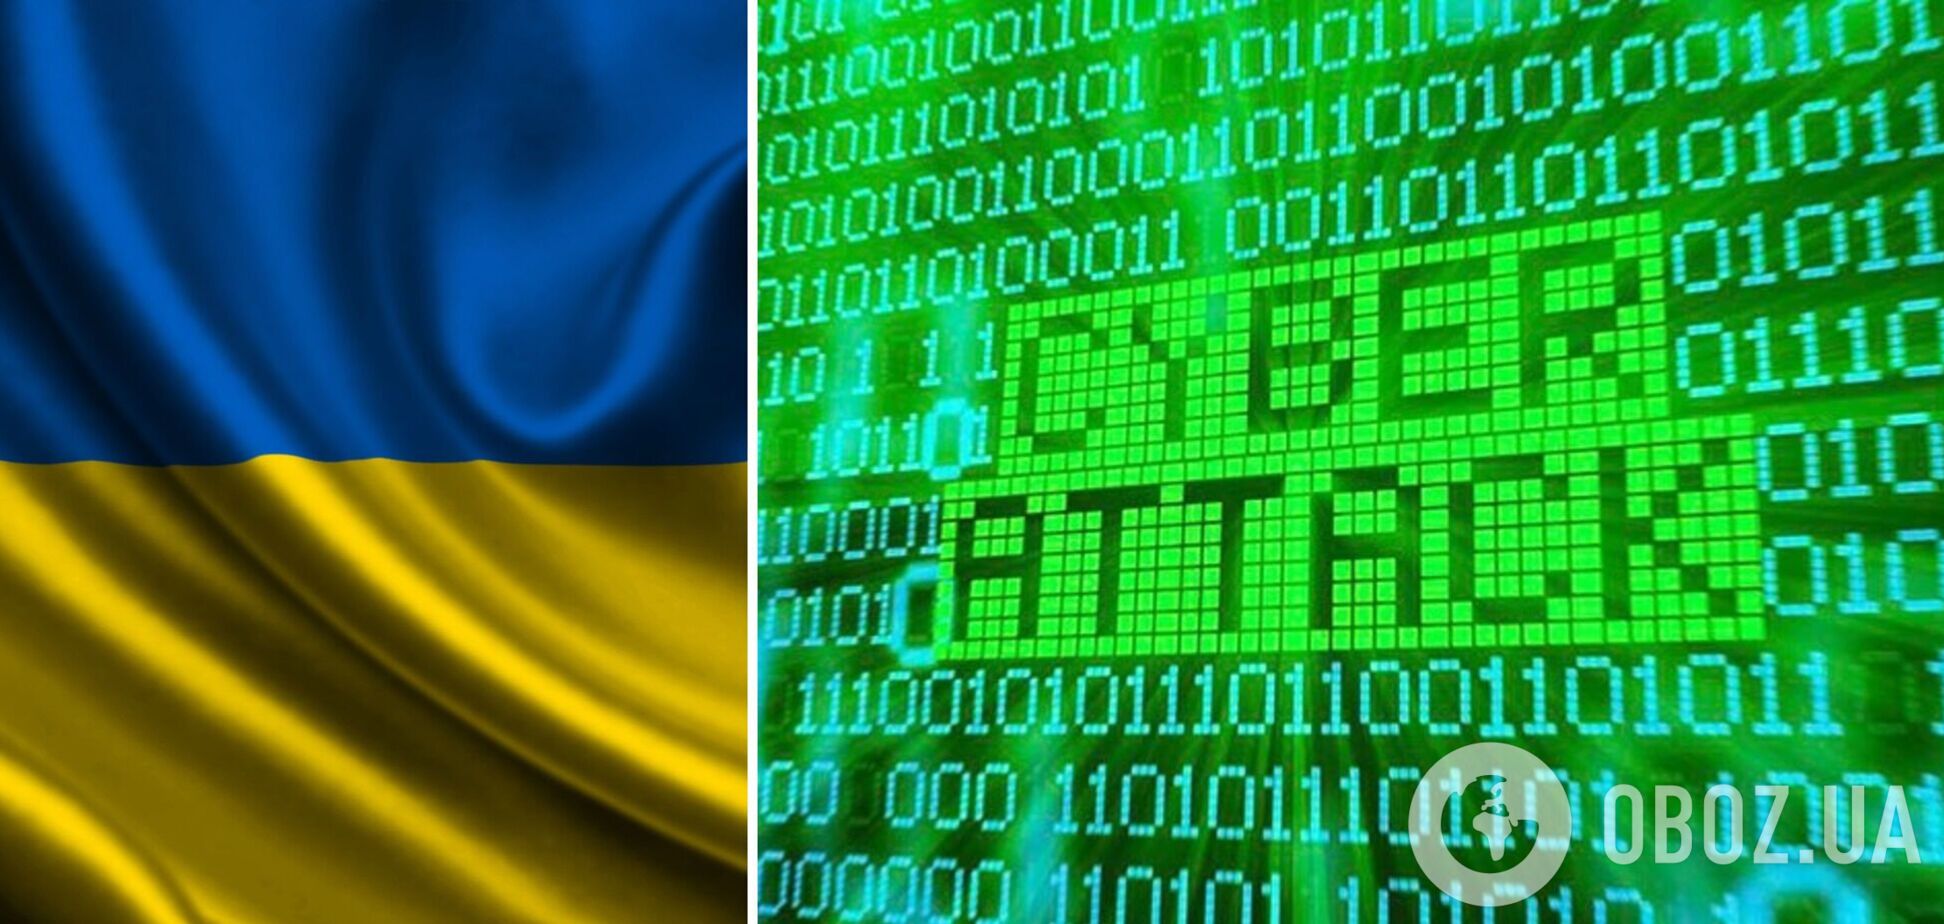 Низка урядових сайтів України перестали відкриватися